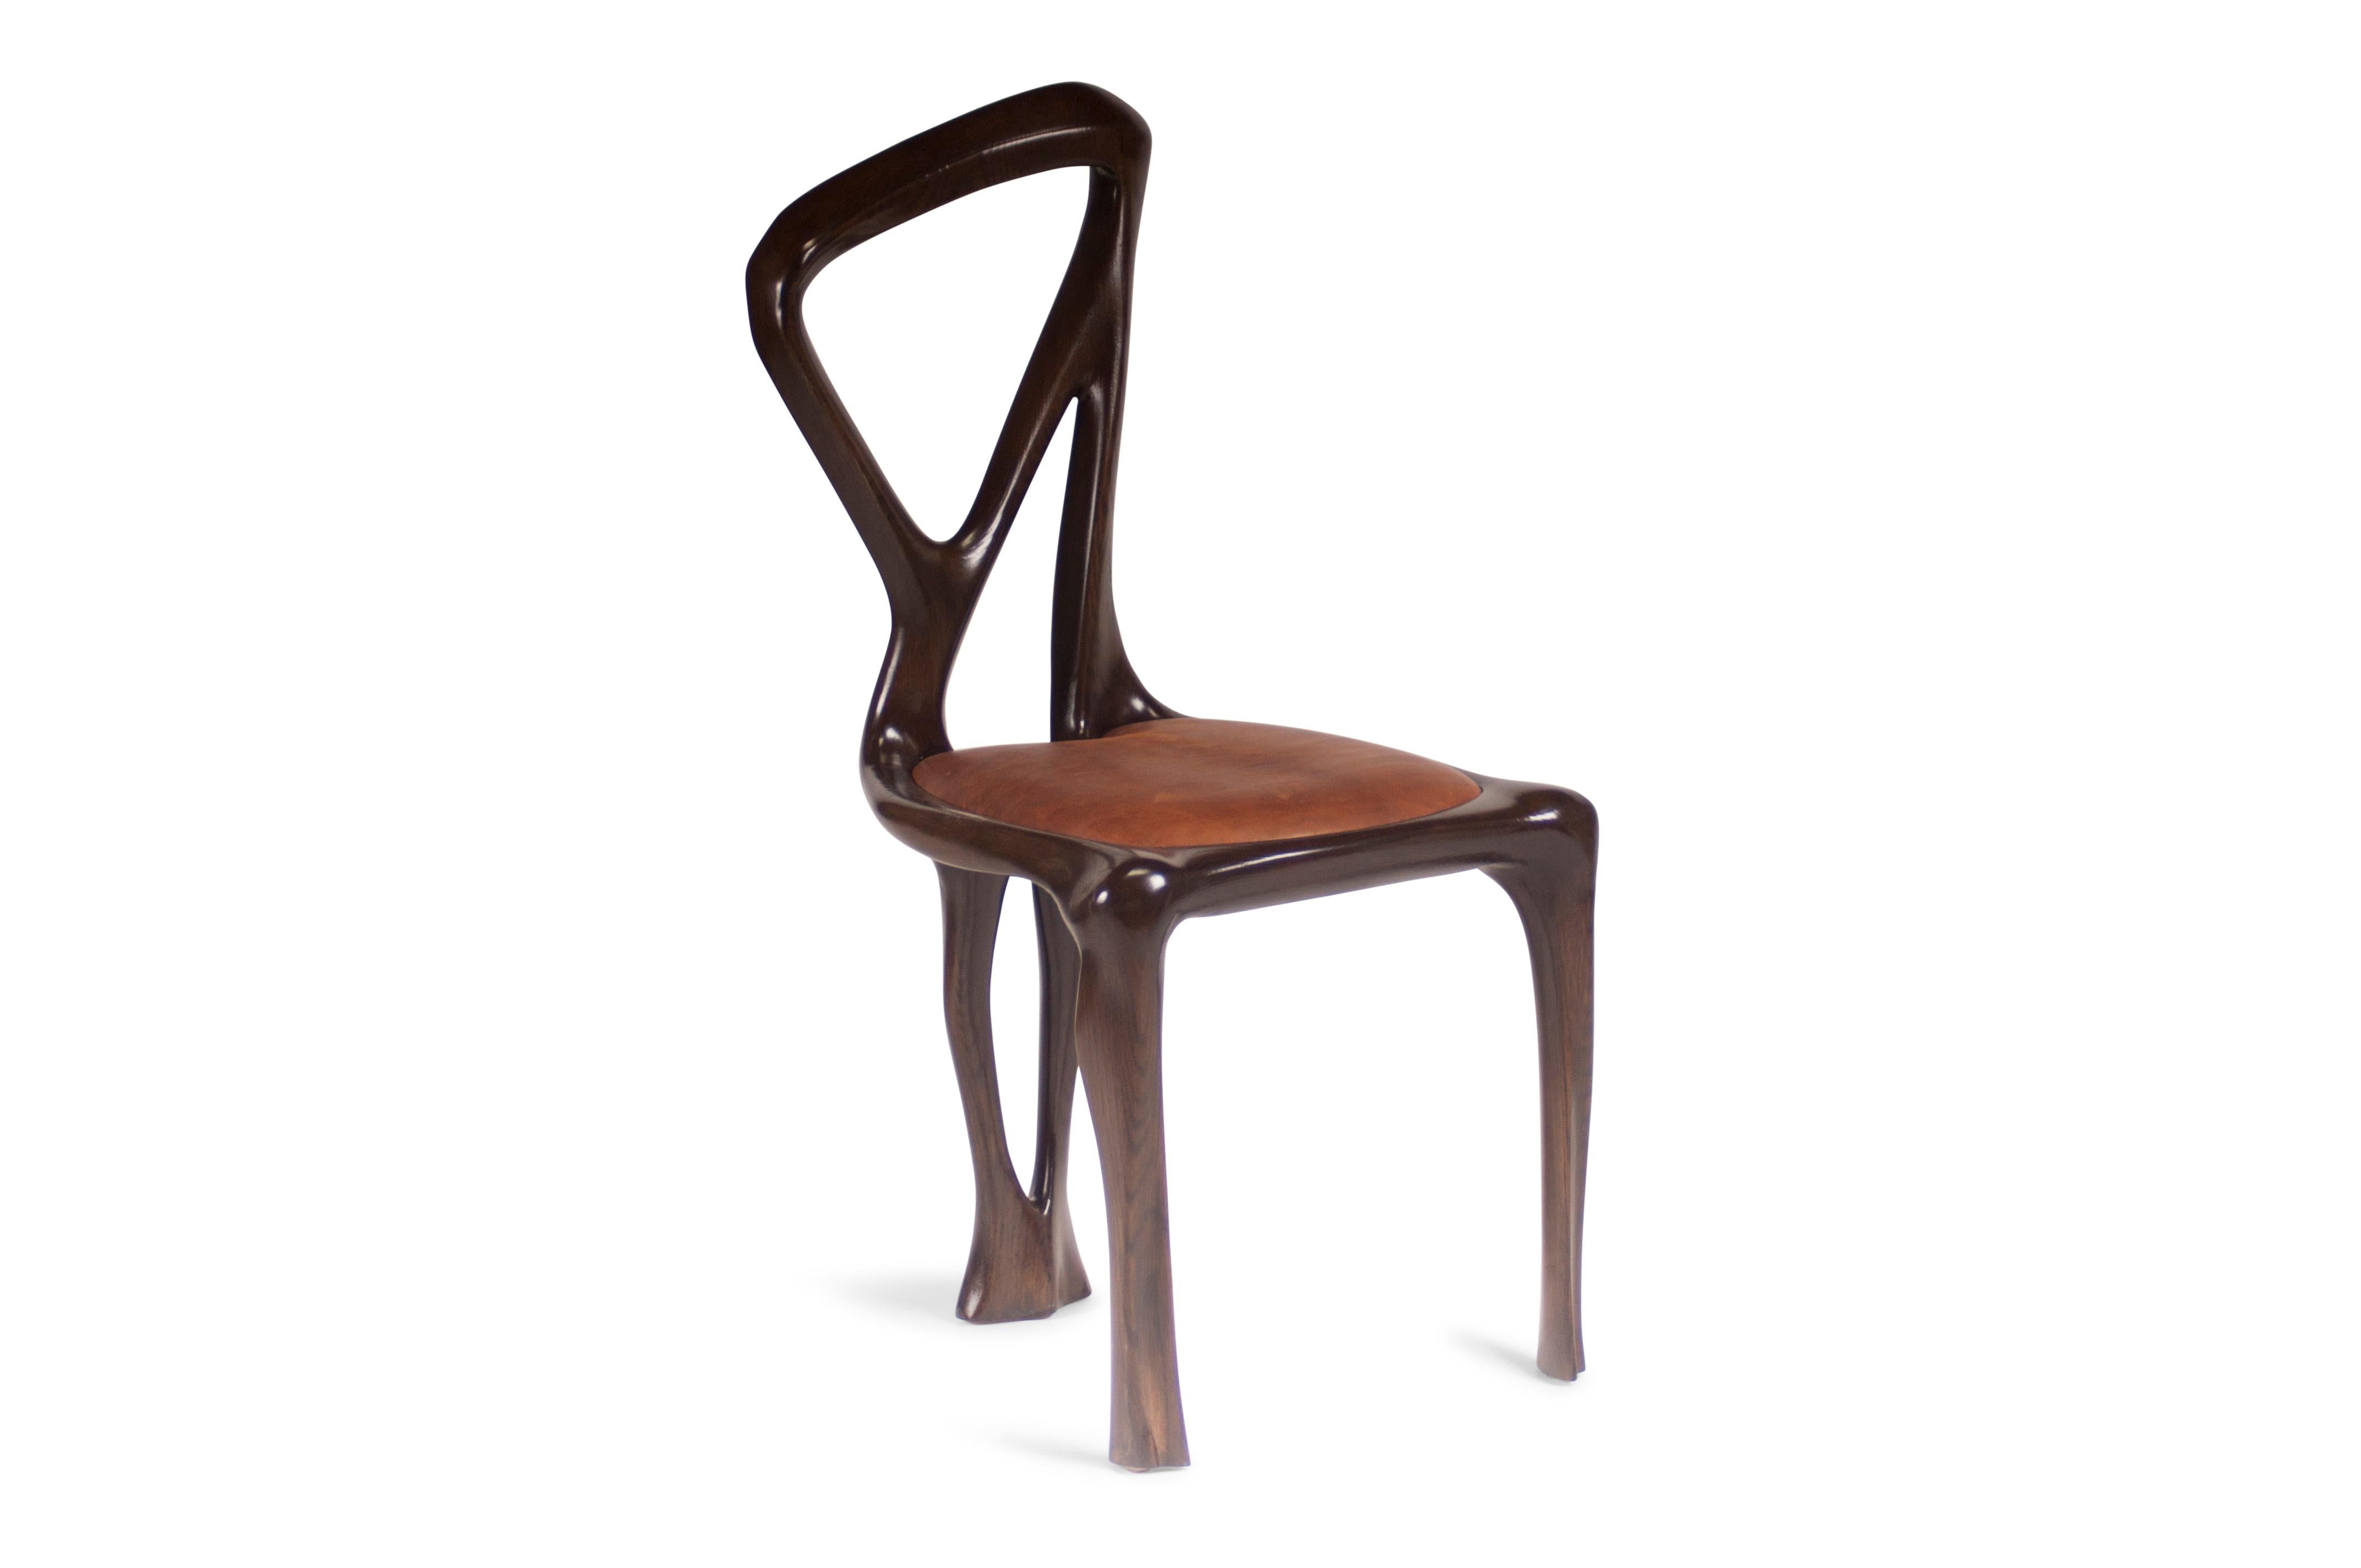 Chaise de salle à manger conçue par Amorph en bois de frêne massif et cuir. Il est teinté noyer foncé.
Dimension : 38